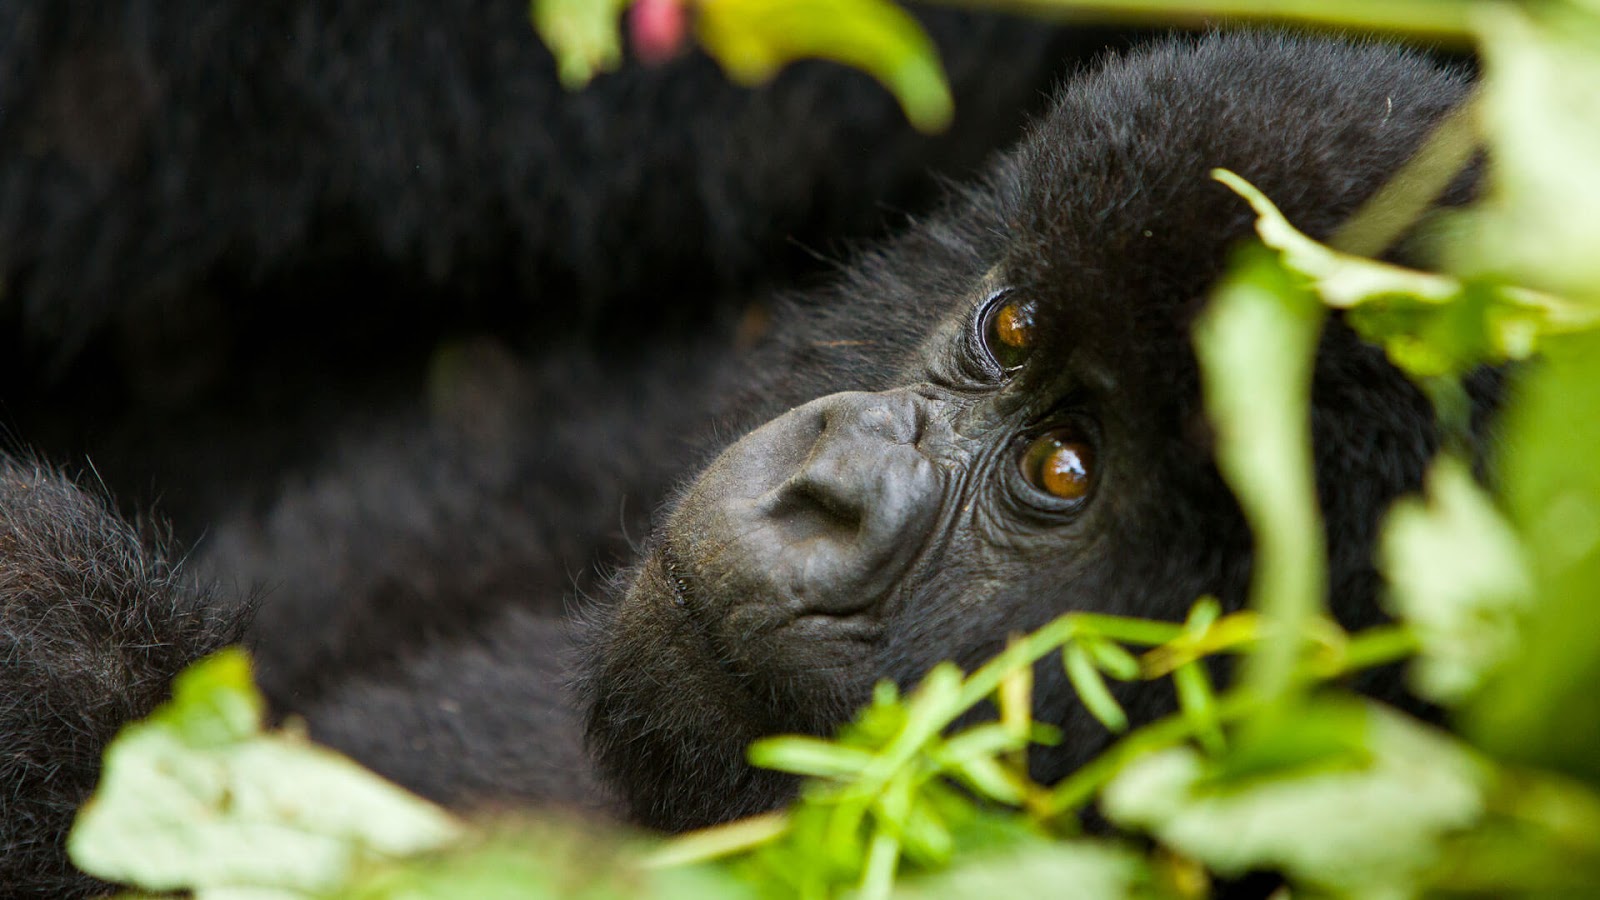 Safety of a Rwanda Safari